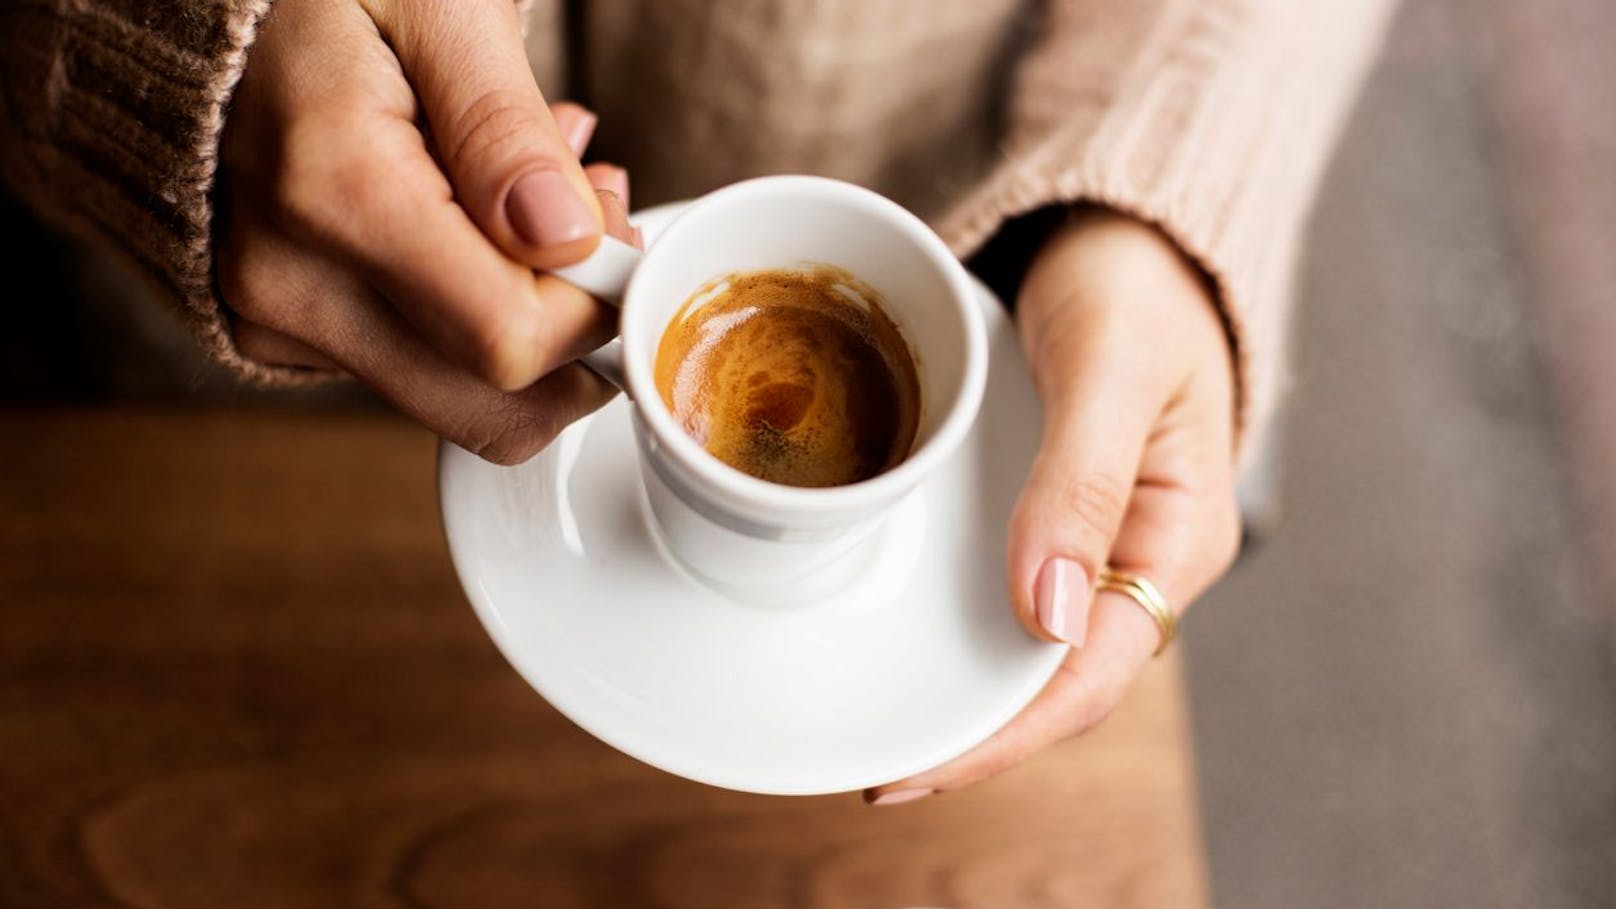 <strong>KAFFEE!</strong> Der kritische Inhaltsstoff bei Kaffee ist das Koffein. Der Toxikologe erklärt: "In kleinen Mengen genossen wirkt es anregend. In großen Mengen kann es zu einer akuten Koffeinvergiftung kommen. Langfristig kann Koffein zu Herz-Kreislauf-Problemen oder Bluthochdruck führen." Deshalb gilt: Kaffee ja - aber nur in Maßen. Als Richtwert nennt Schleh die Einschätzung der Europäische Behörde für Lebensmittelsicherheit. Diese gibt an, dass eine Einzeldosis an Koffein von 3 Milligramm pro Kilogramm Körpergewicht für die Gesundheit unbedenklich ist.